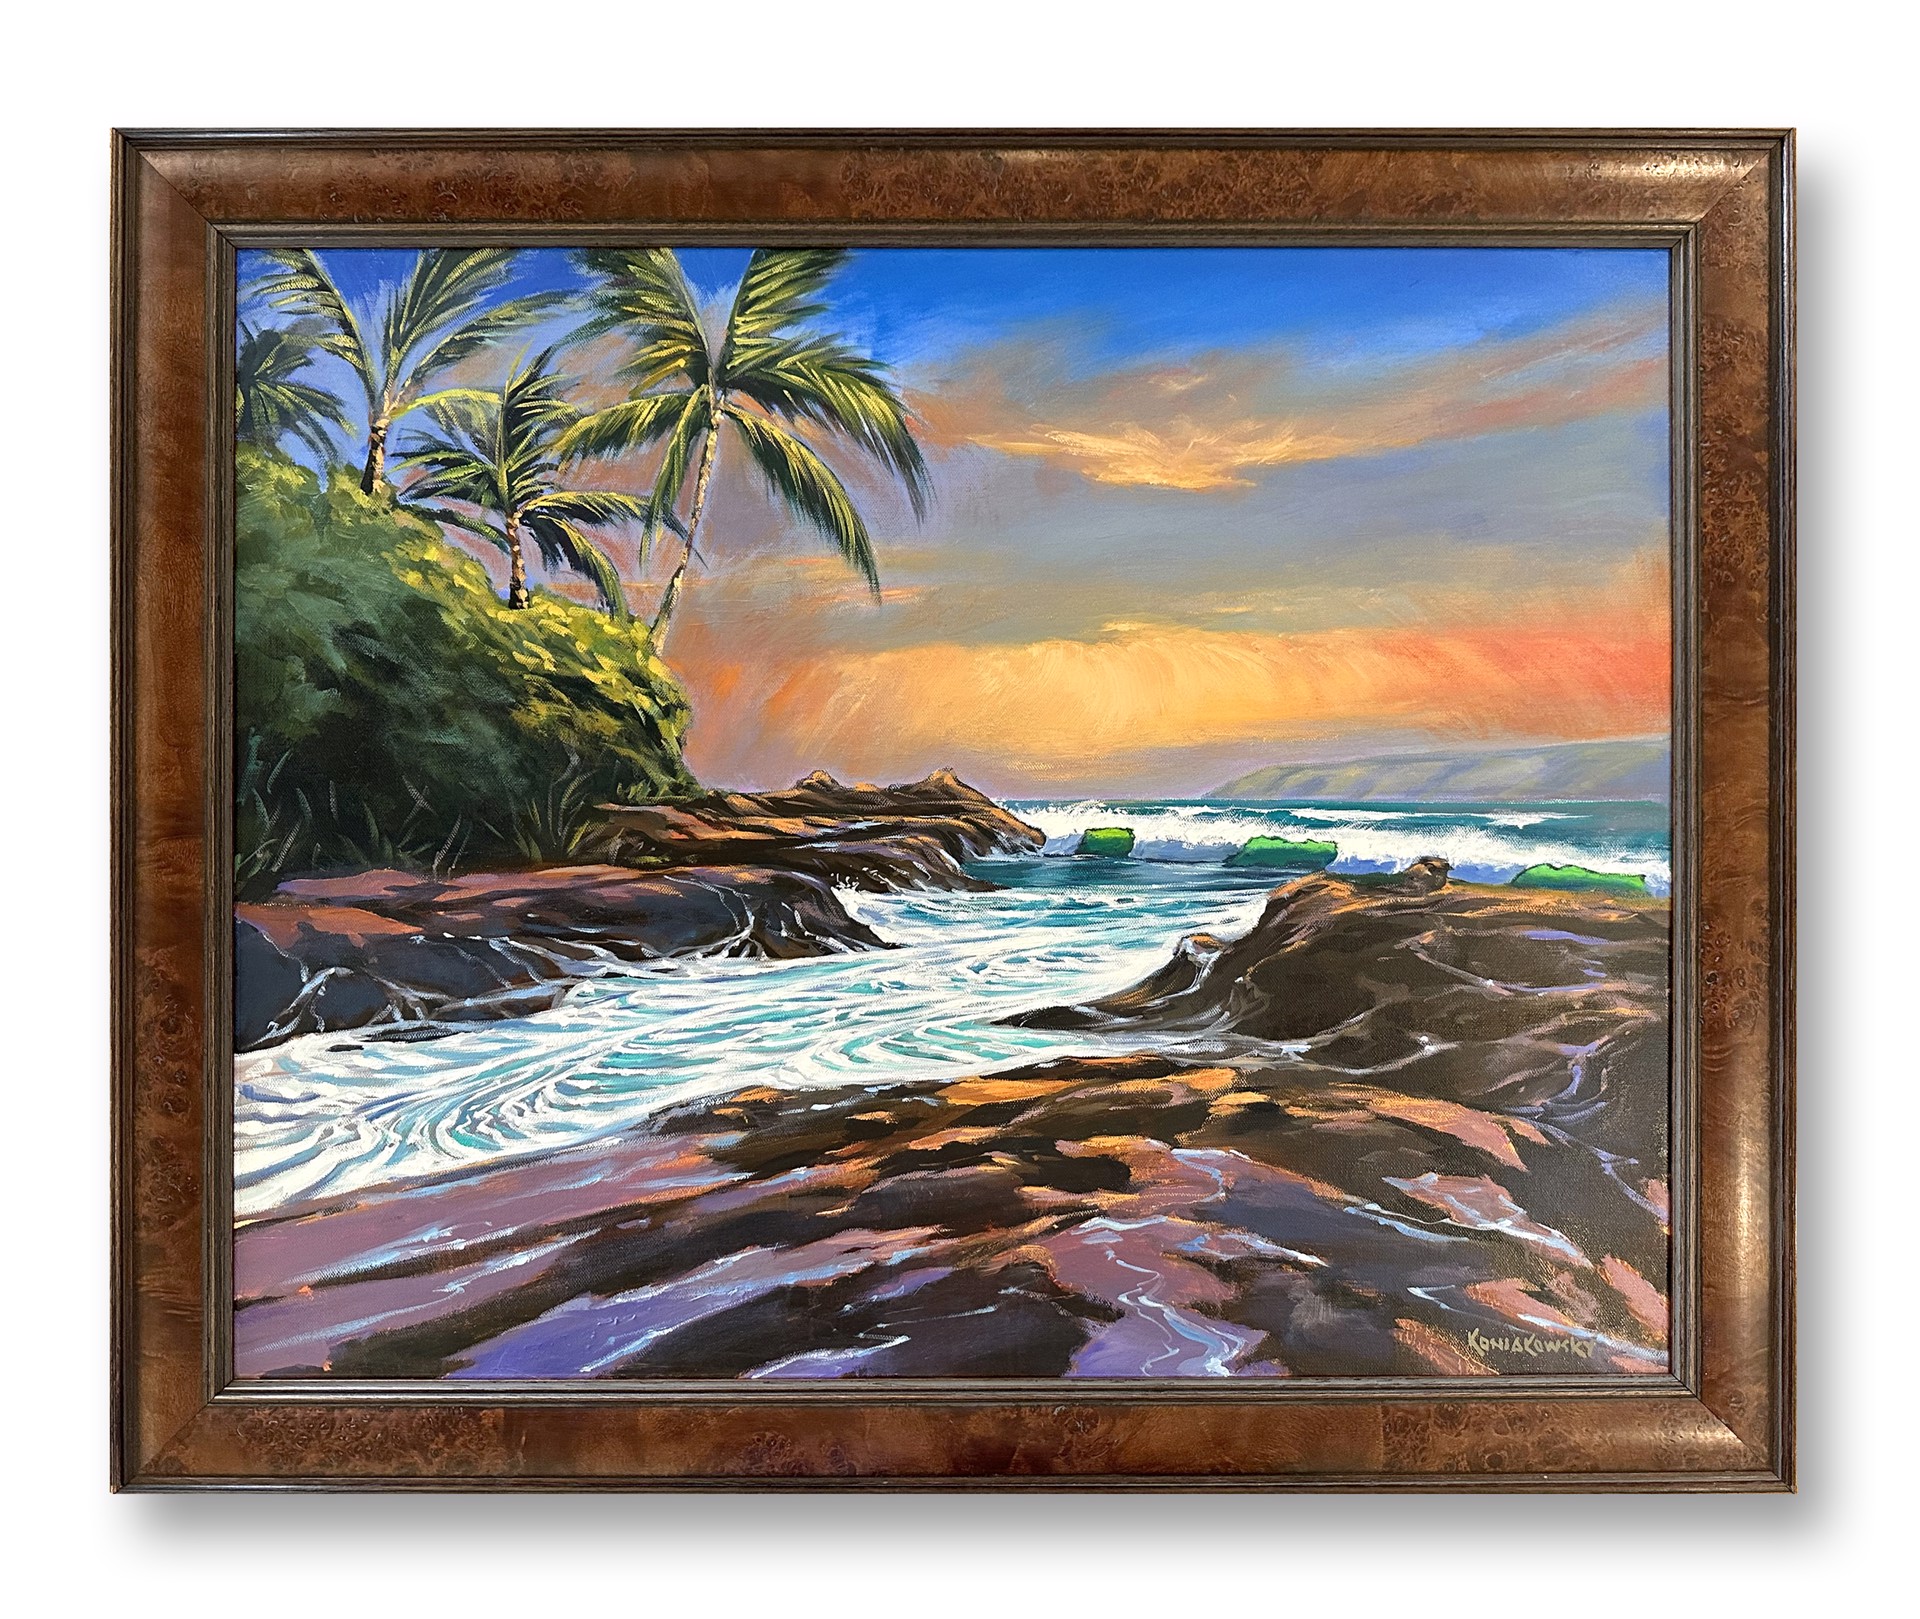 Makena, Maui by Wade Koniakowsky